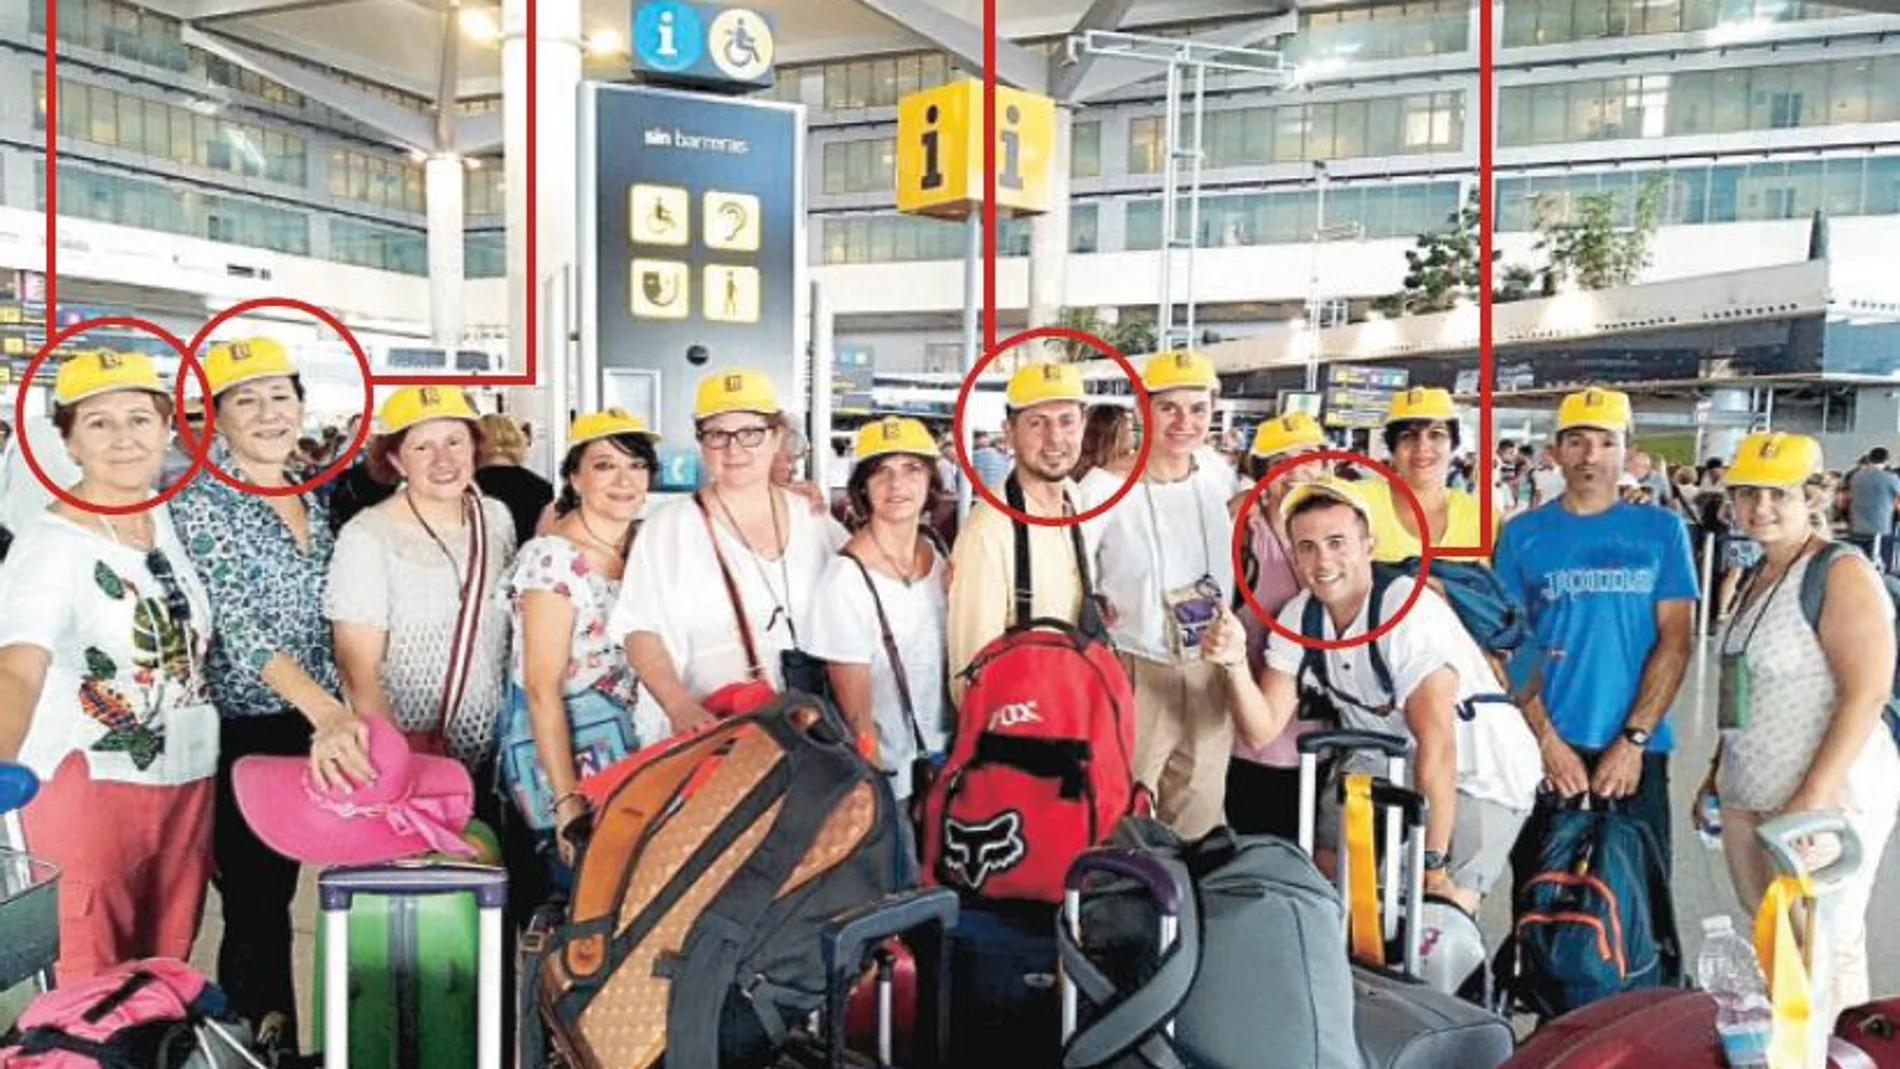 Los 13 voluntarios se hicieron esta foto en el aeropuerto poco antes de coger su vuelo hacia la India